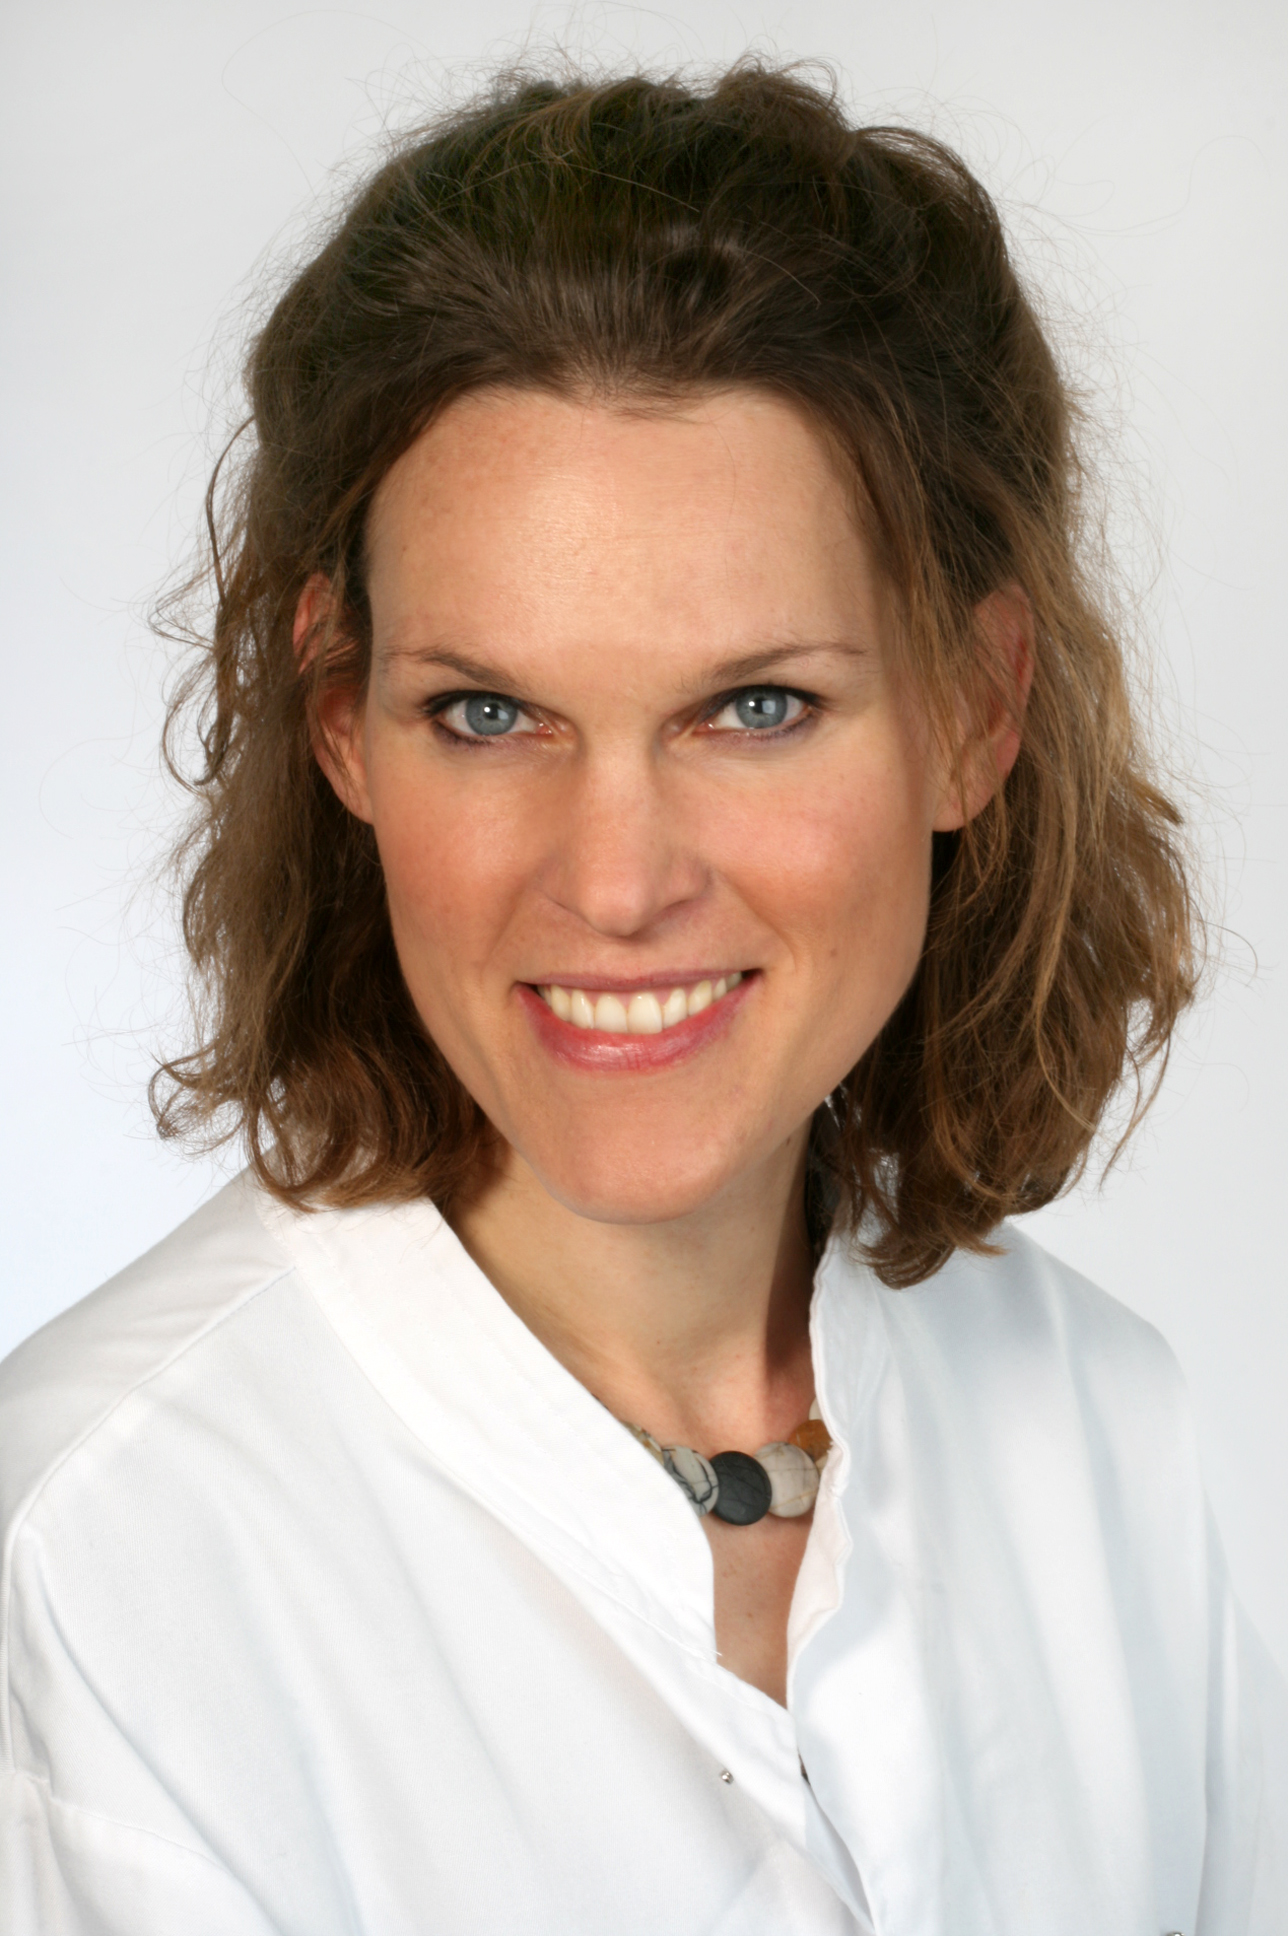 Porträtaufnahme von Dr. Andrea Forschner, Leiterin der Melanom-Ambulanz der Universitäts-Hautklinik Tübingen.